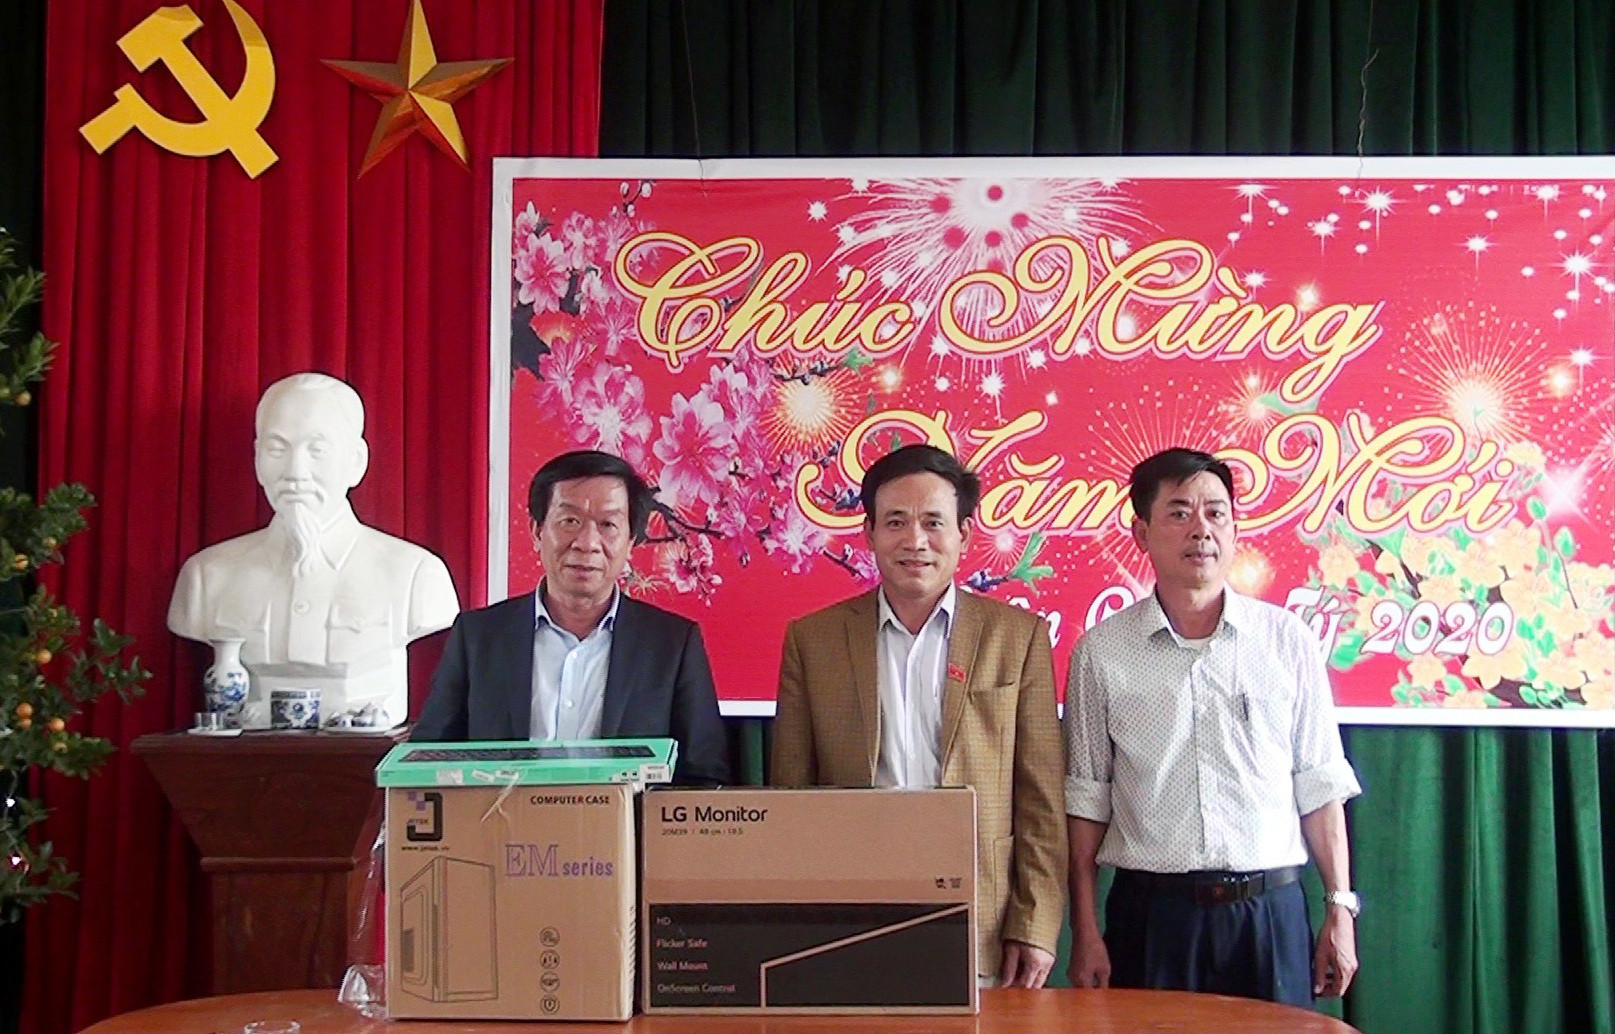 Trao 2 bộ máy vi tính trị giá 20 triệu đồng cho UBND xã Quỳnh Thọ, huyện Quỳnh Lưu. Ảnh: Việt Hùng